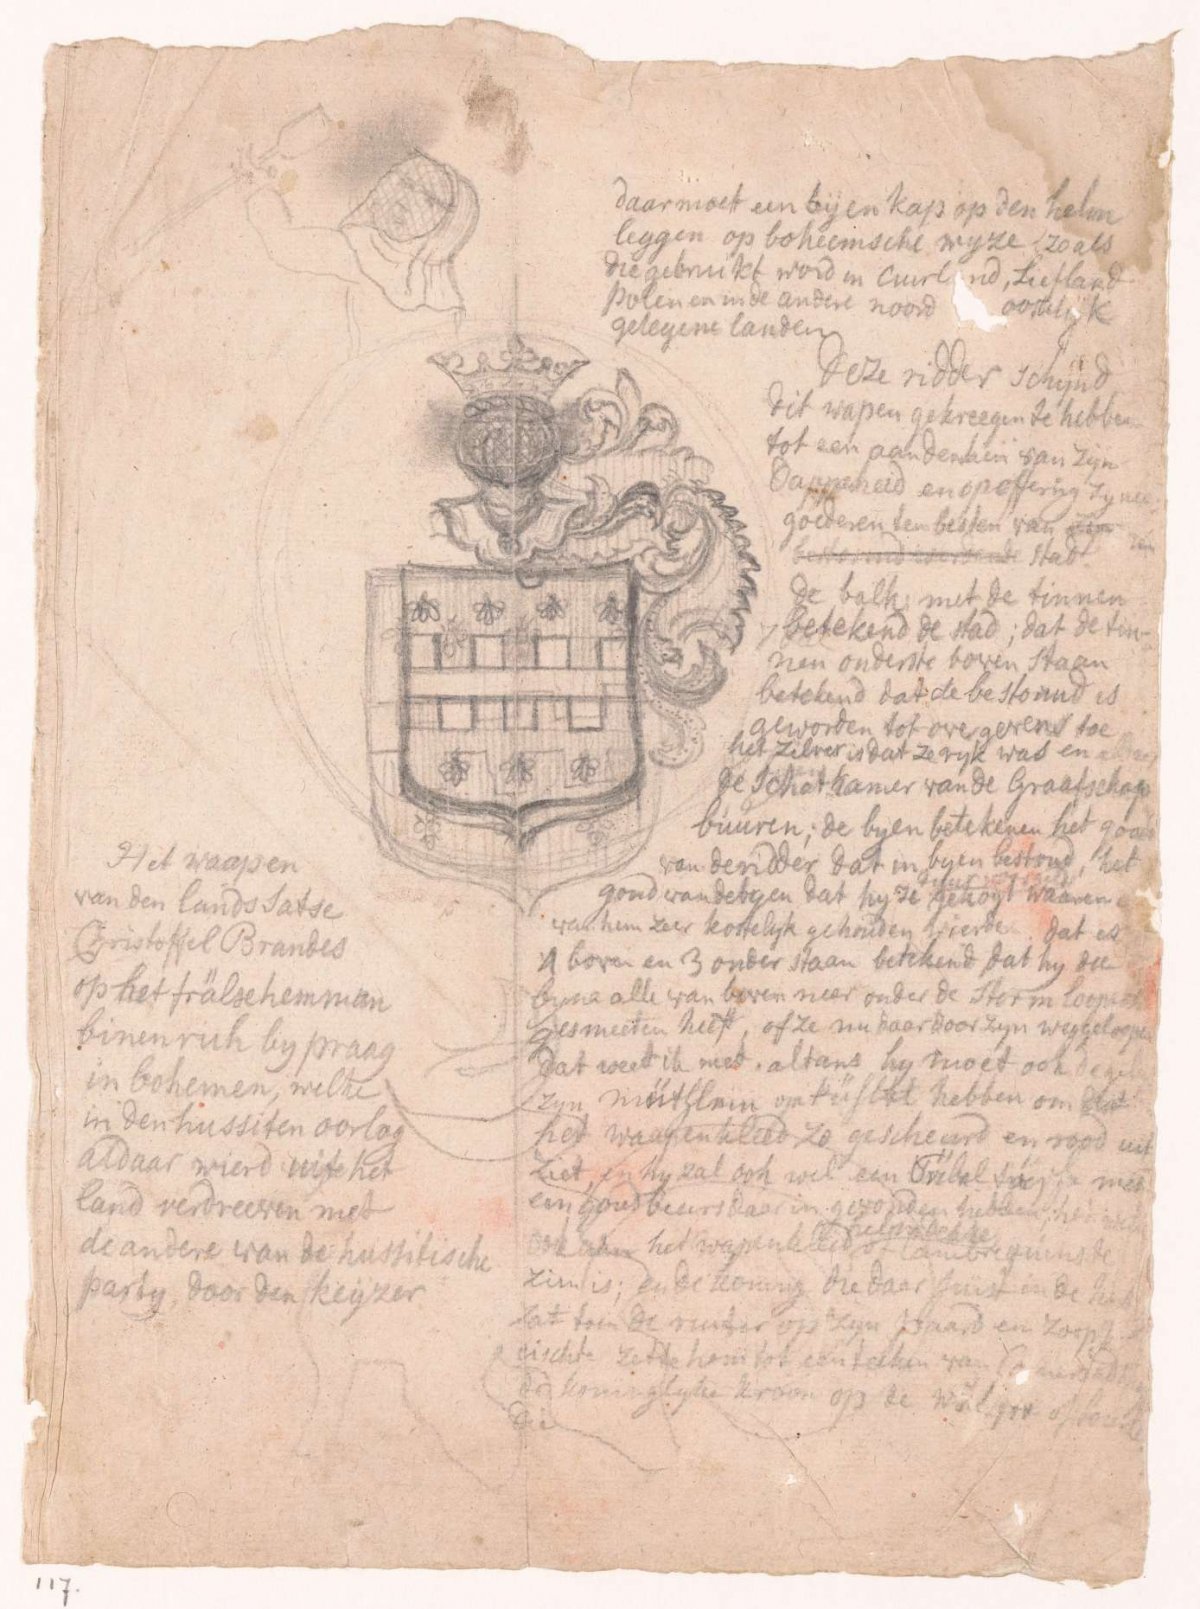 Brandes family crest, Jan Brandes, 1770 - 1808